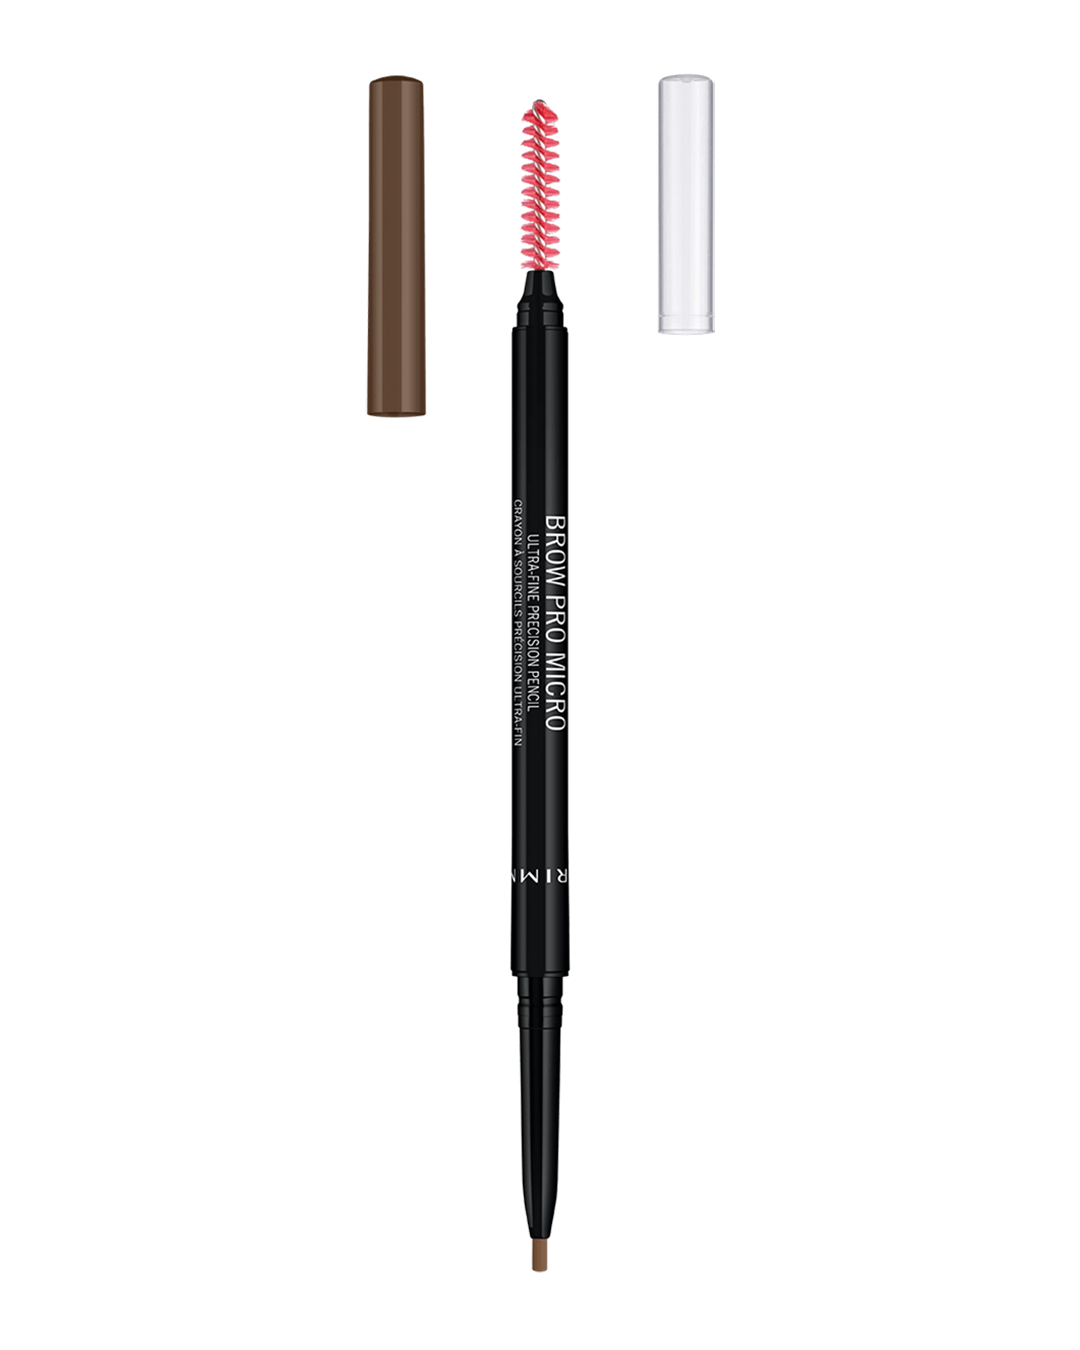 Rimmel London Brow Pro Micro Ultra-Fine Precision Pencil